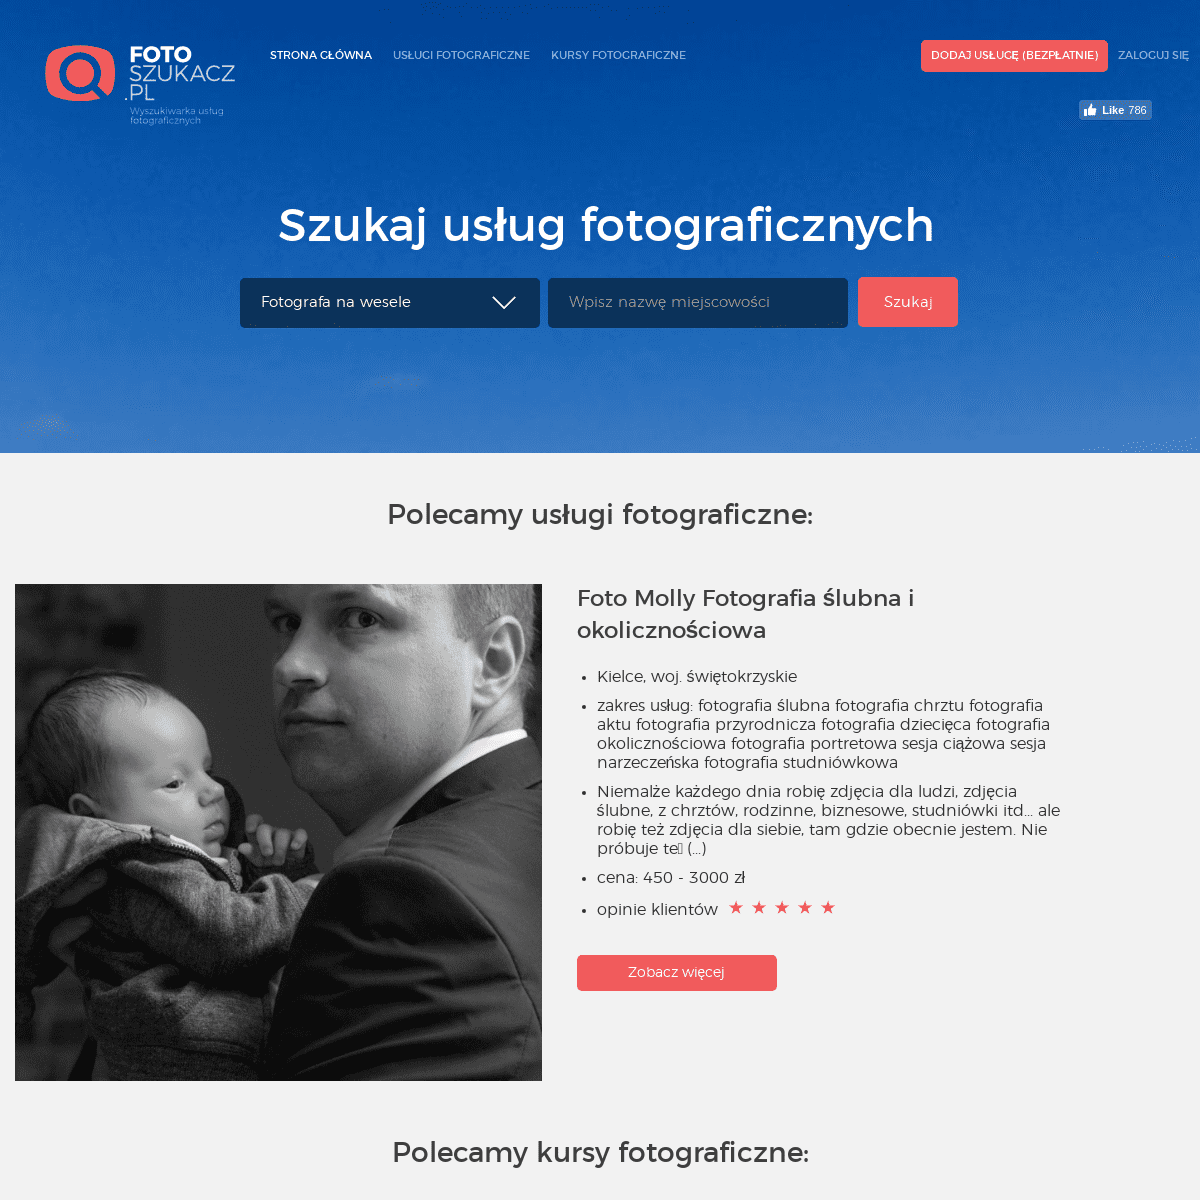 FotoSzukacz.pl - katalog, baza fotografów